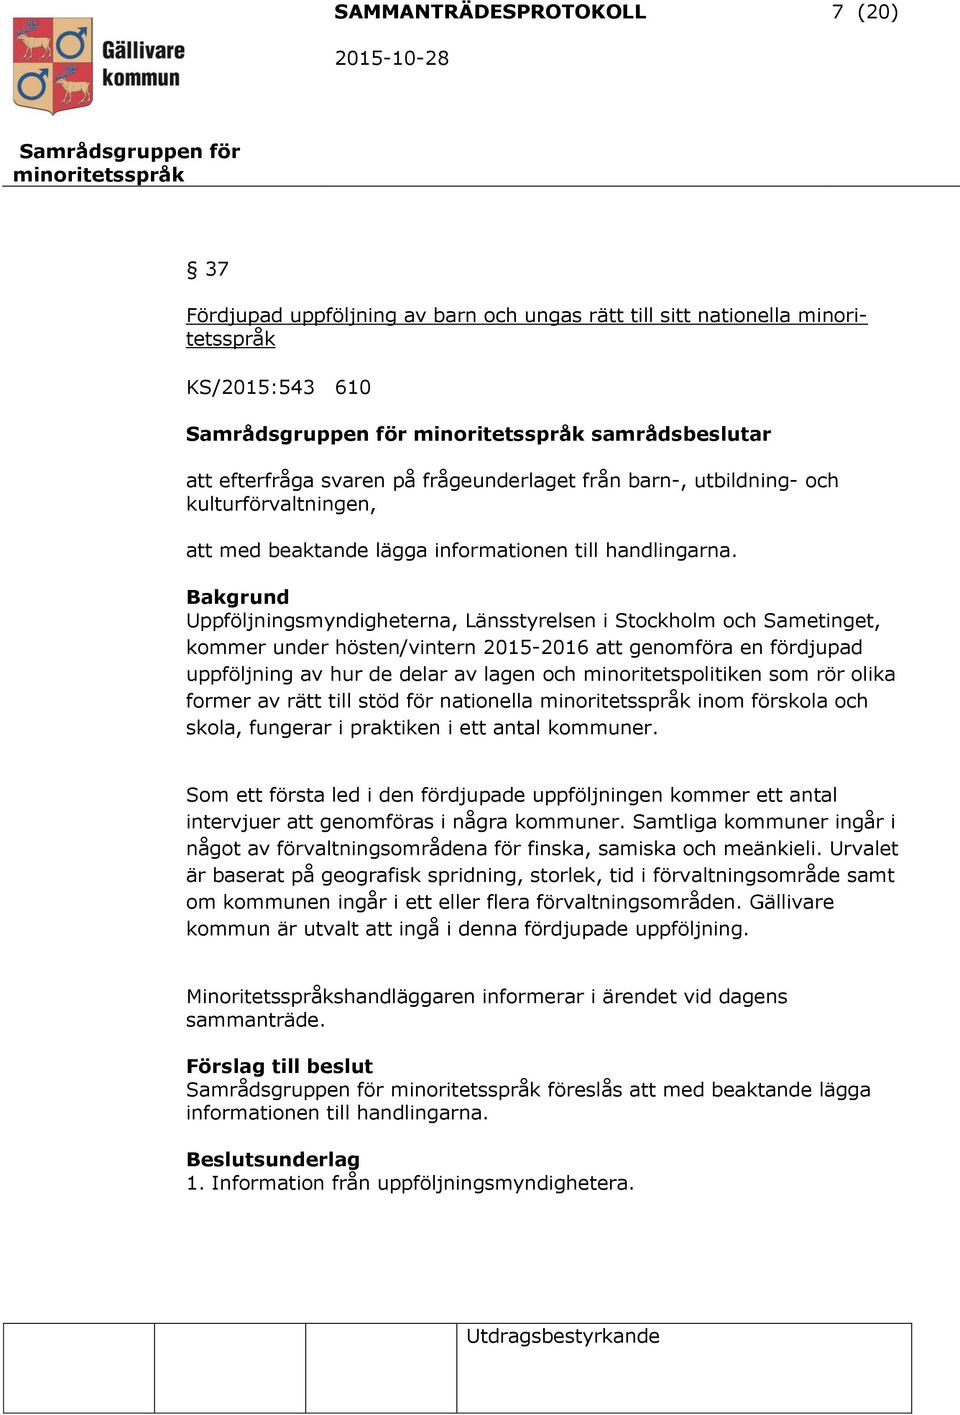 Uppföljningsmyndigheterna, Länsstyrelsen i Stockholm och Sametinget, kommer under hösten/vintern 2015-2016 att genomföra en fördjupad uppföljning av hur de delar av lagen och minoritetspolitiken som